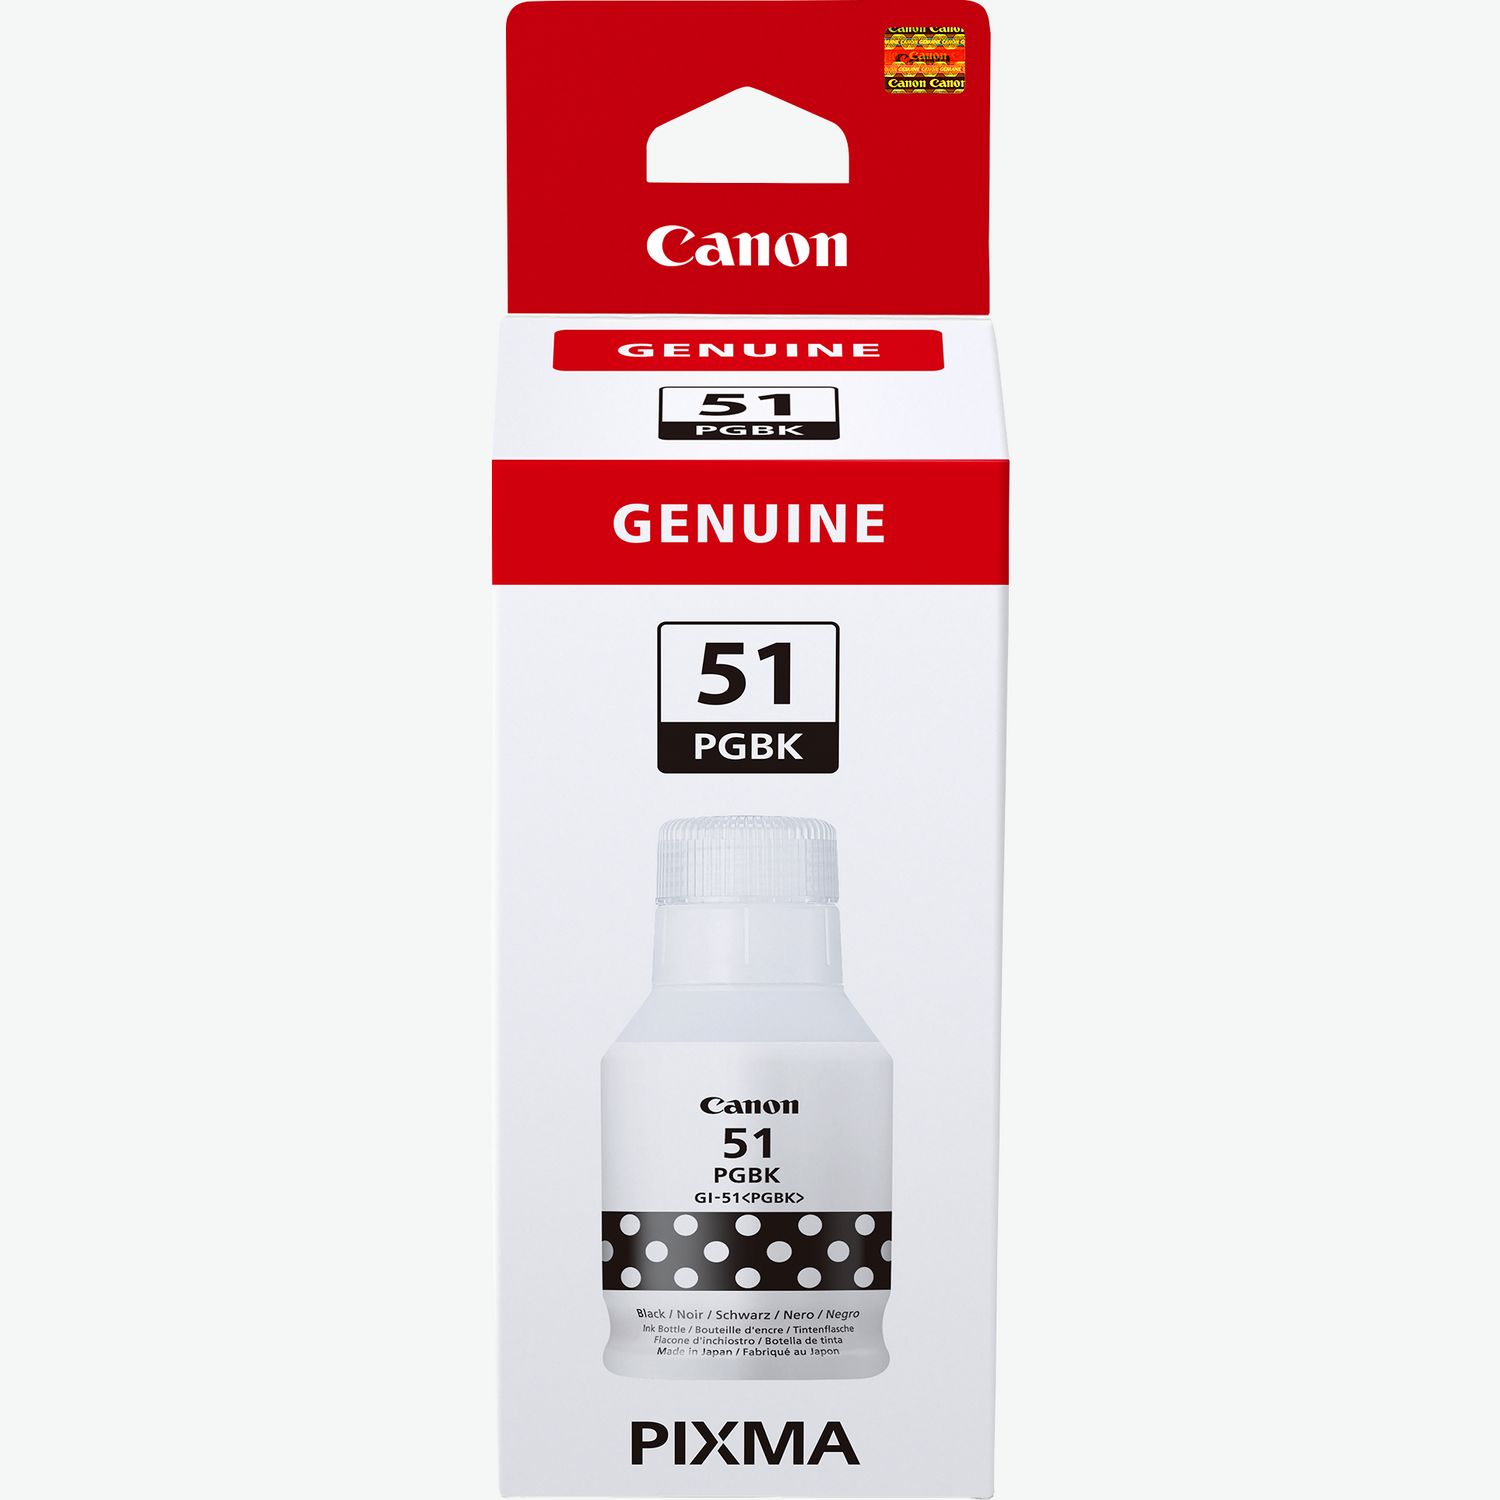 Canon Pixma G1530 MegaTank Impresora Color con Tinta Recargable